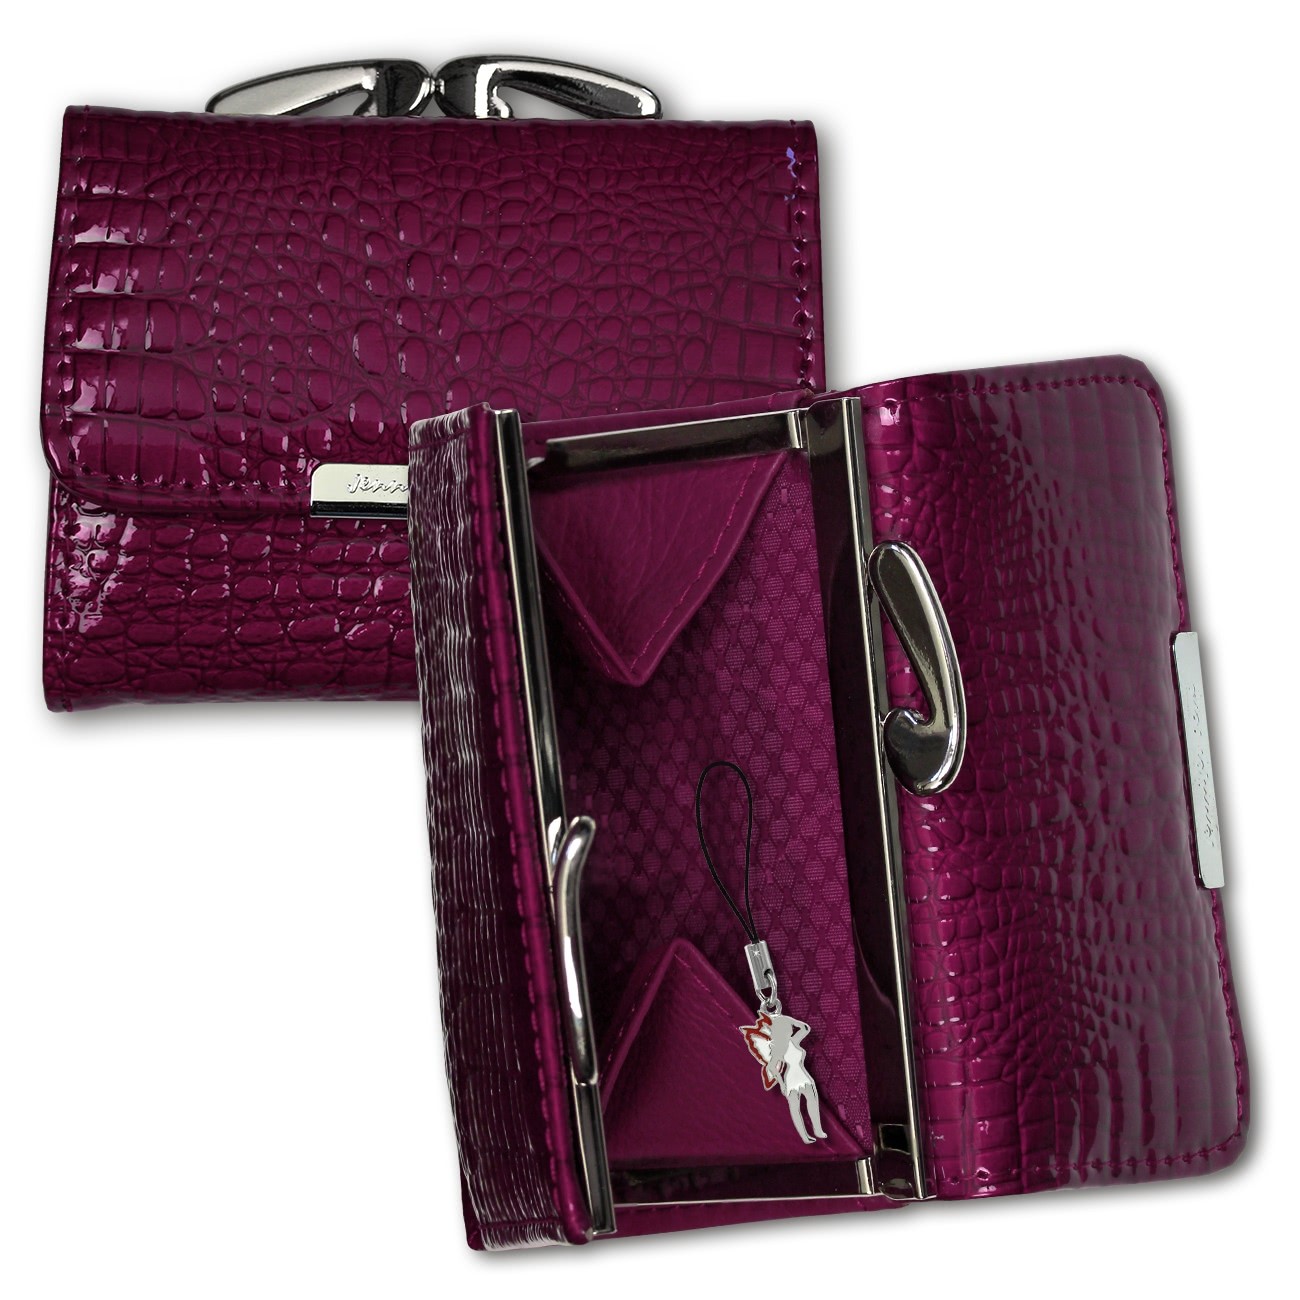 Geldbörse Leder violett kleines Portemonnaie Minibörse Jennifer Jones OPJ119V